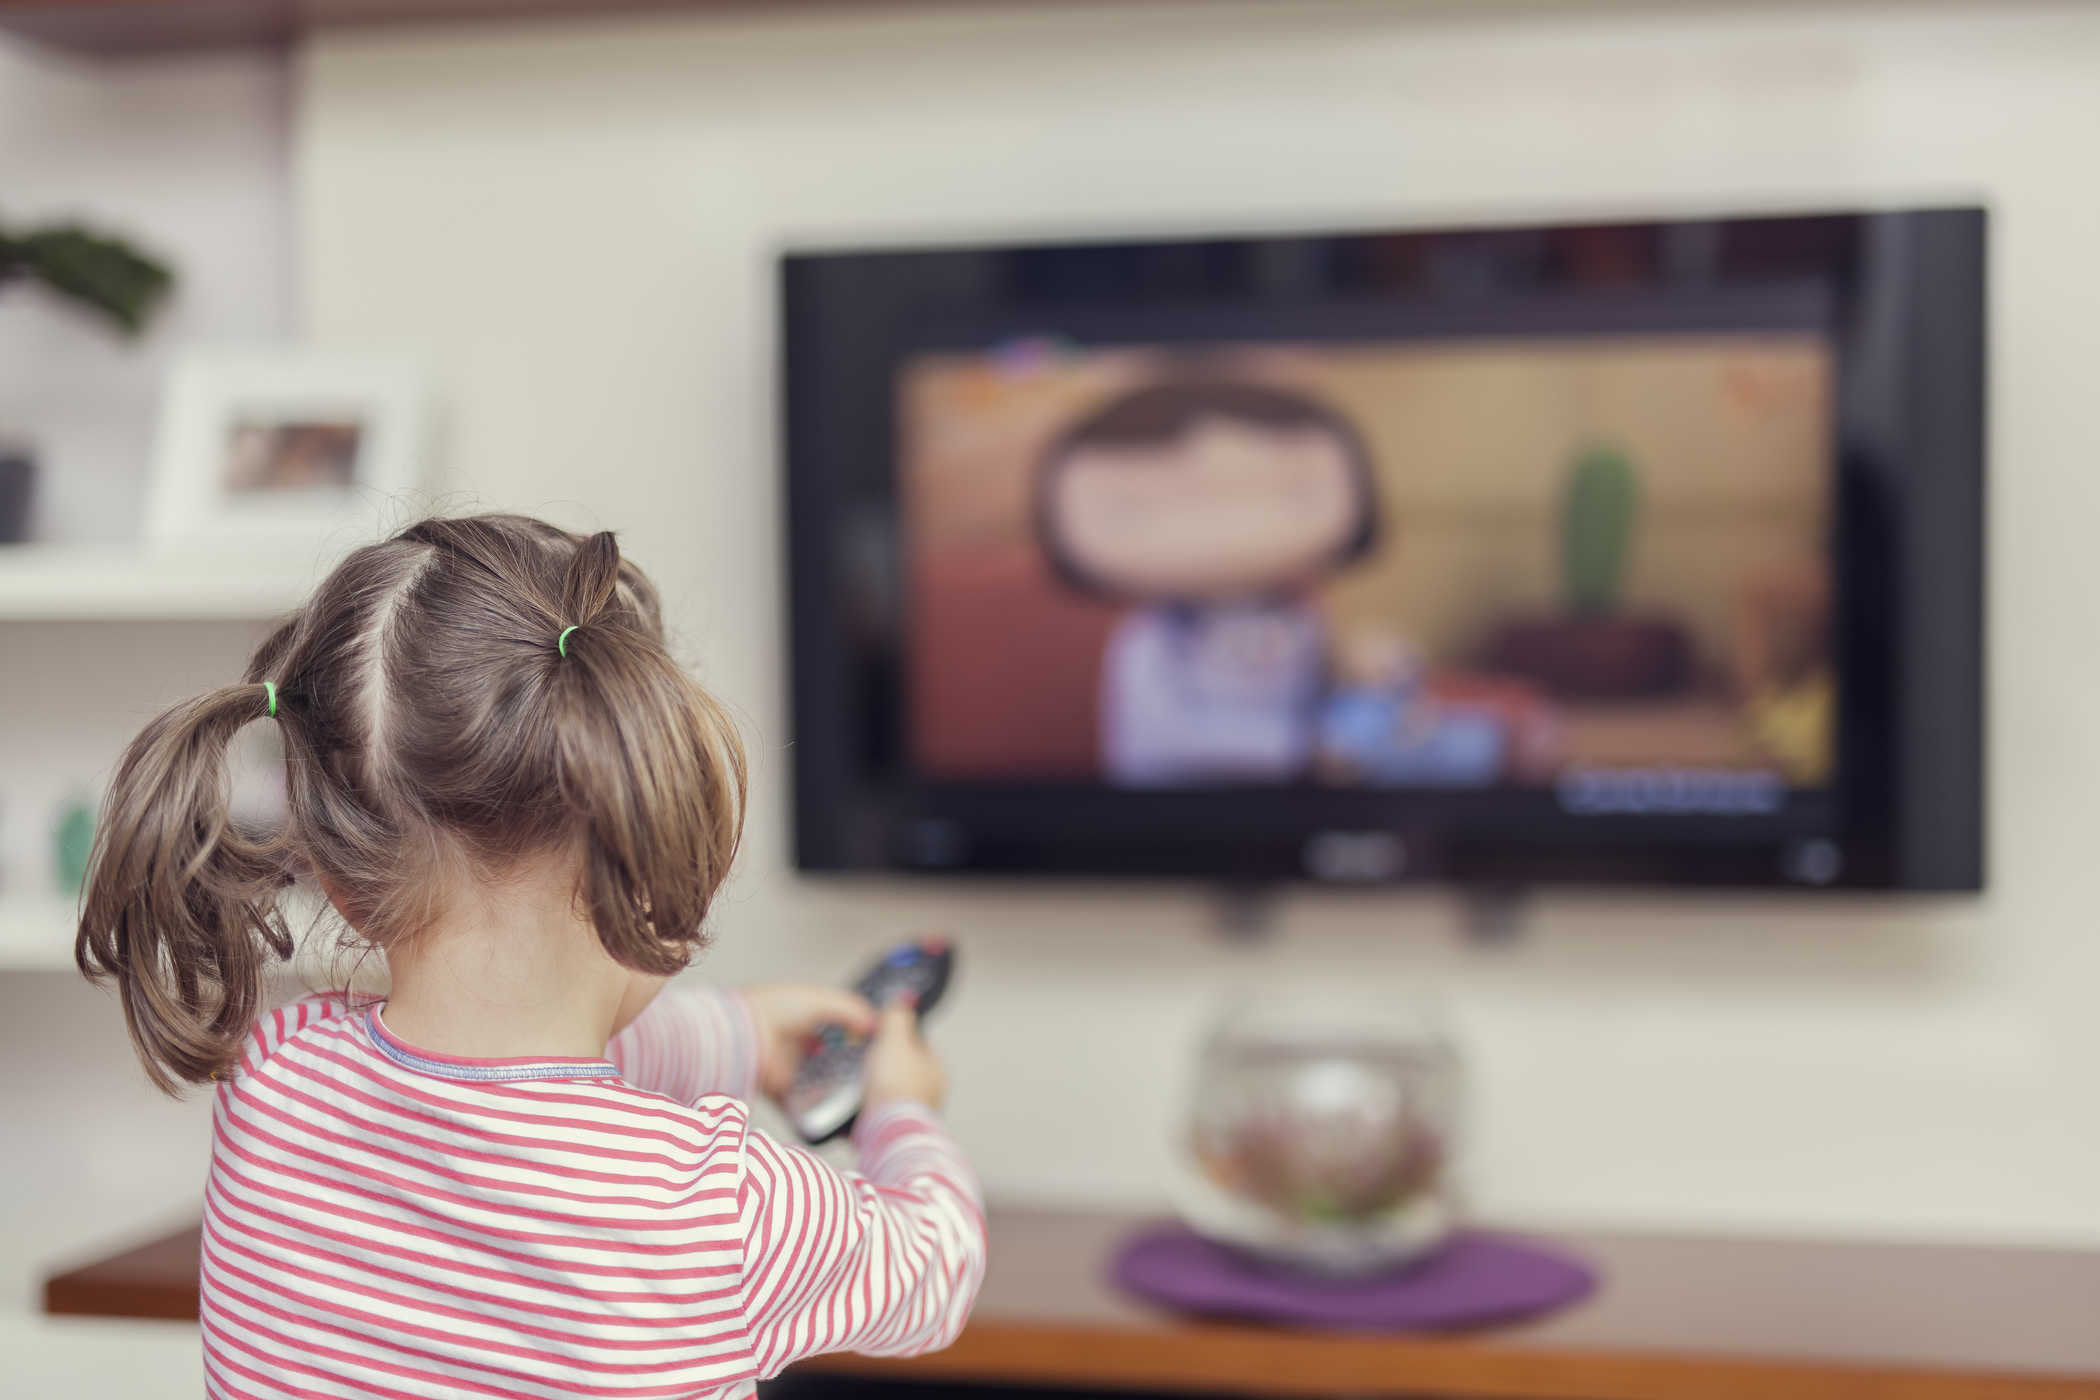 Cha mẹ có nên cho trẻ 2 tuổi xem tivi không?